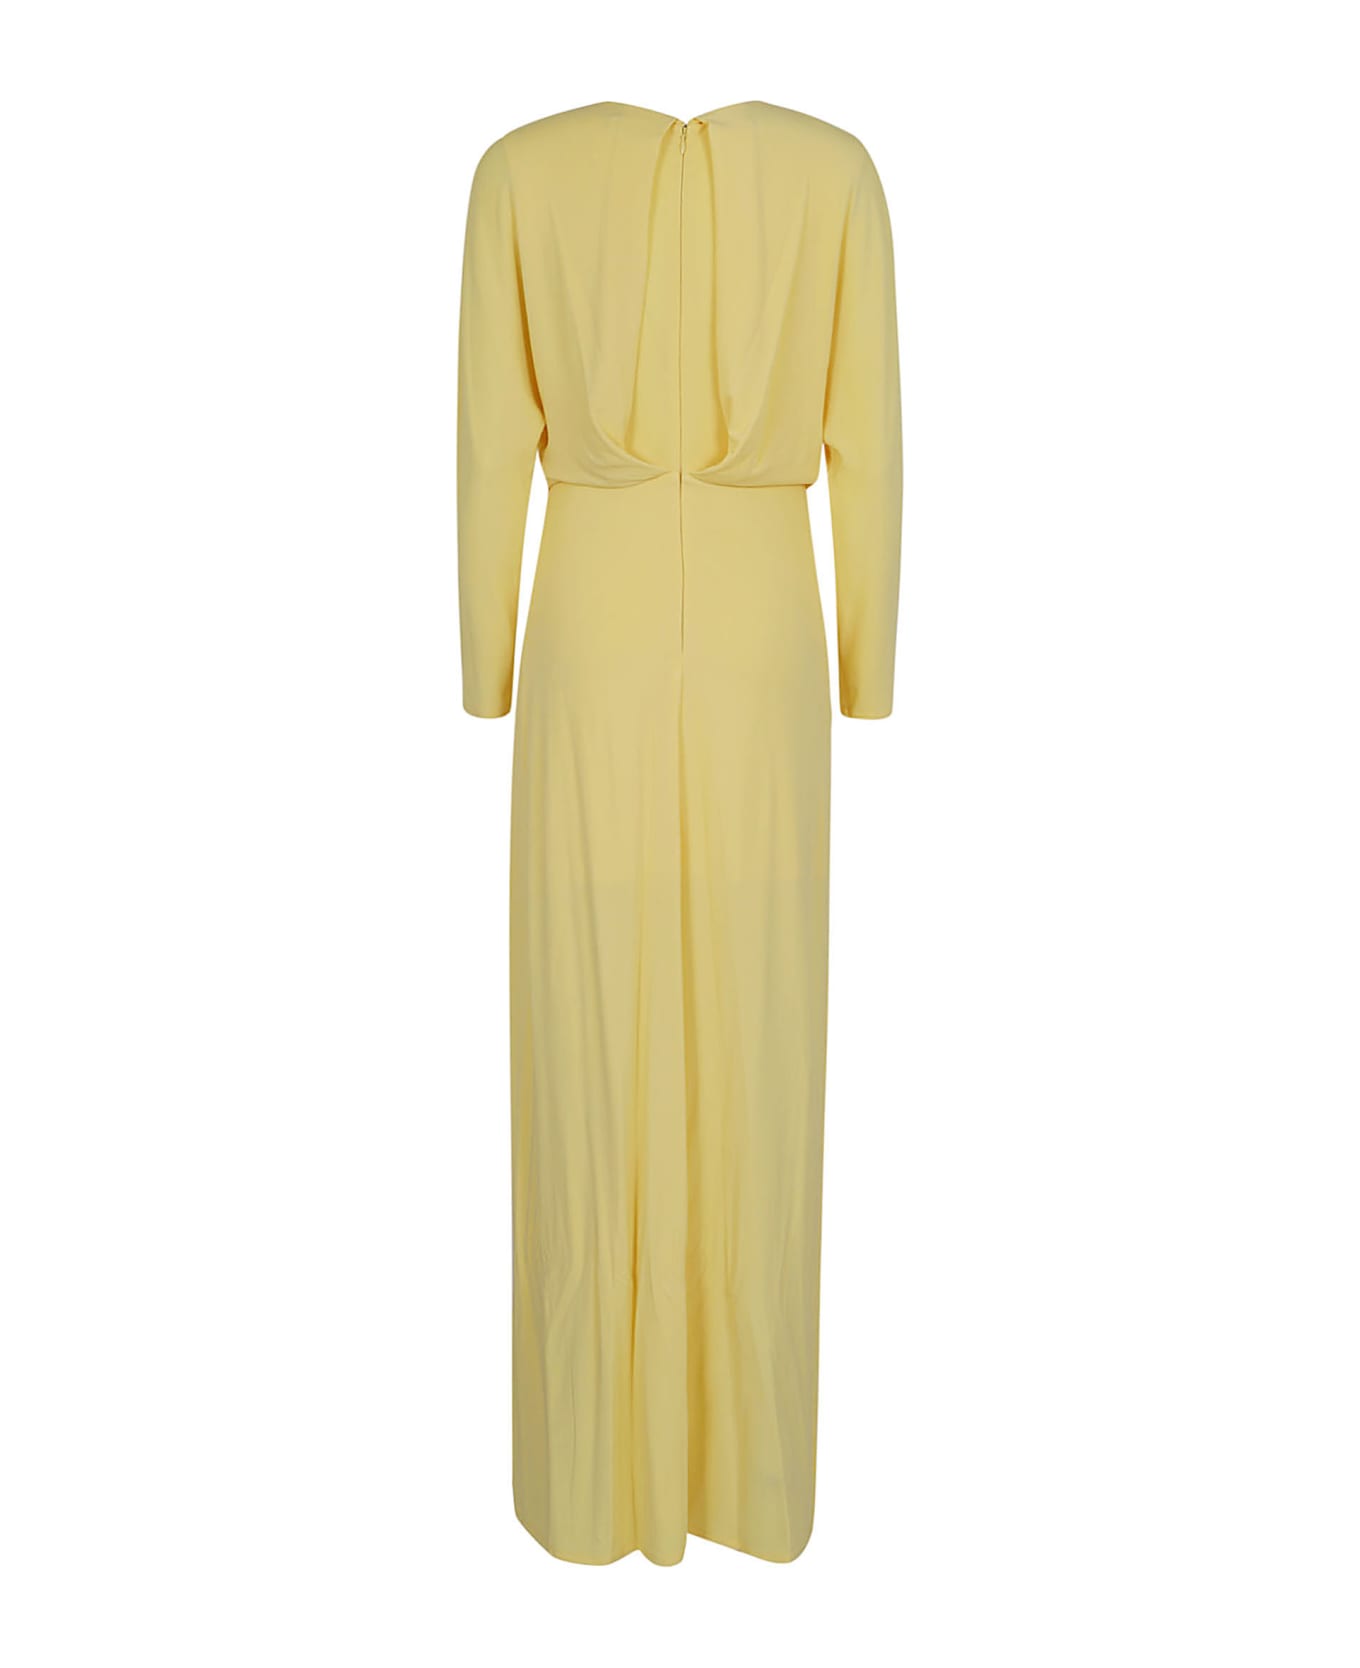 Jonathan Simkhai Maisie L/s Dress - Sulfur